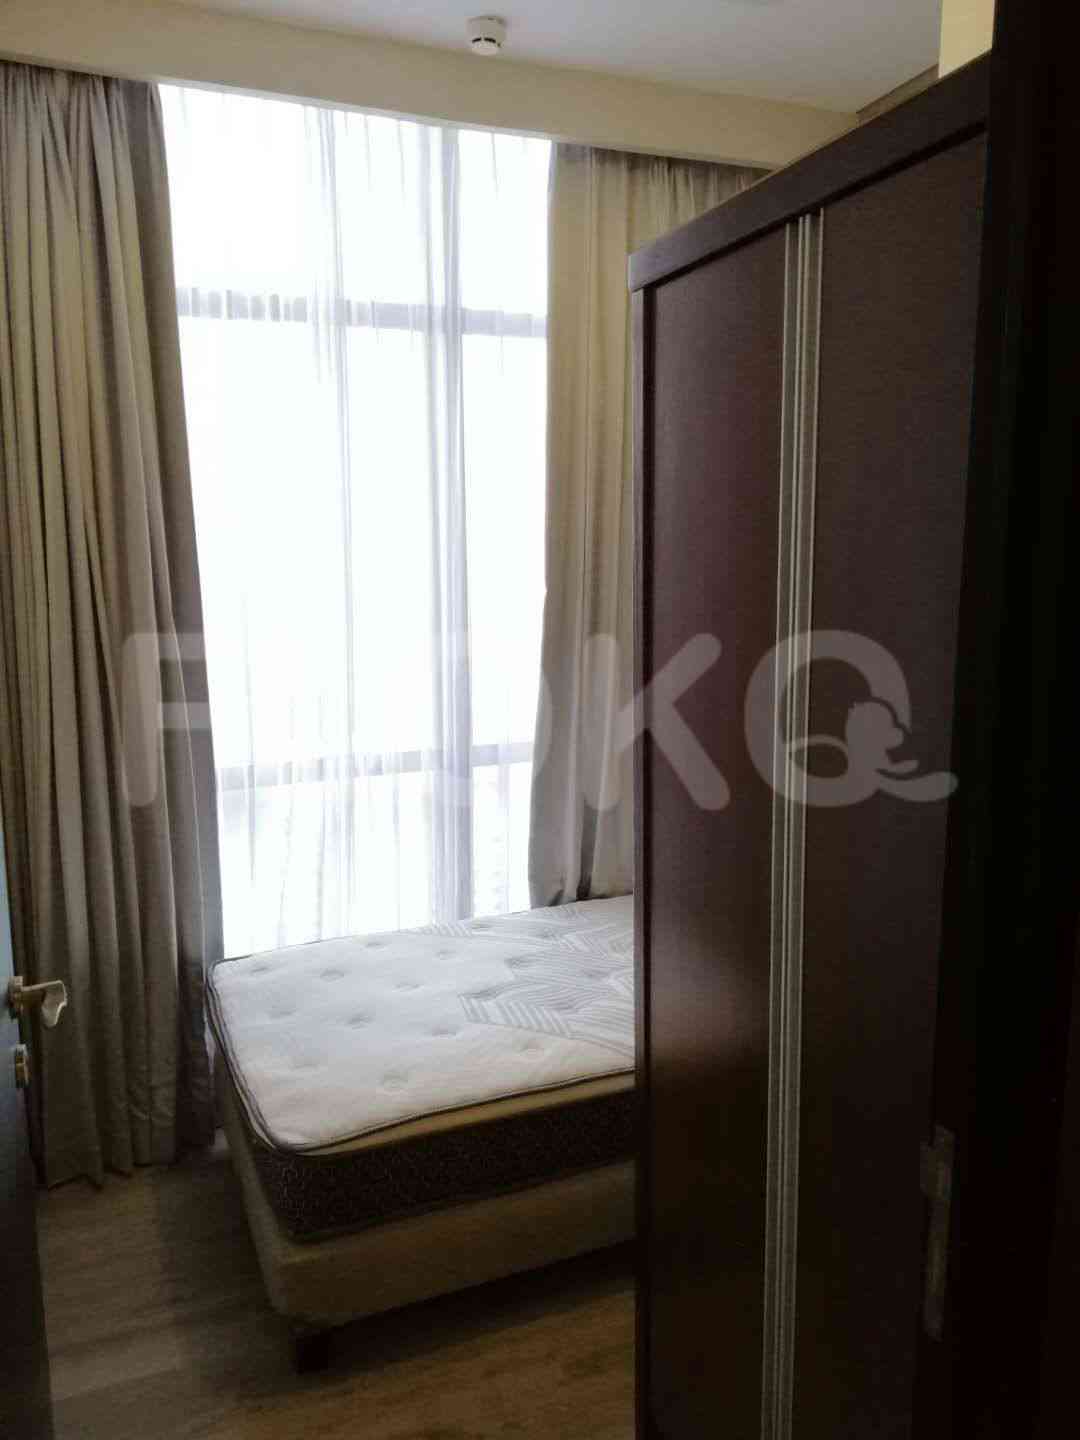 2 Bedroom on 18th Floor for Rent in Sudirman Suites Jakarta - fsu69e 4